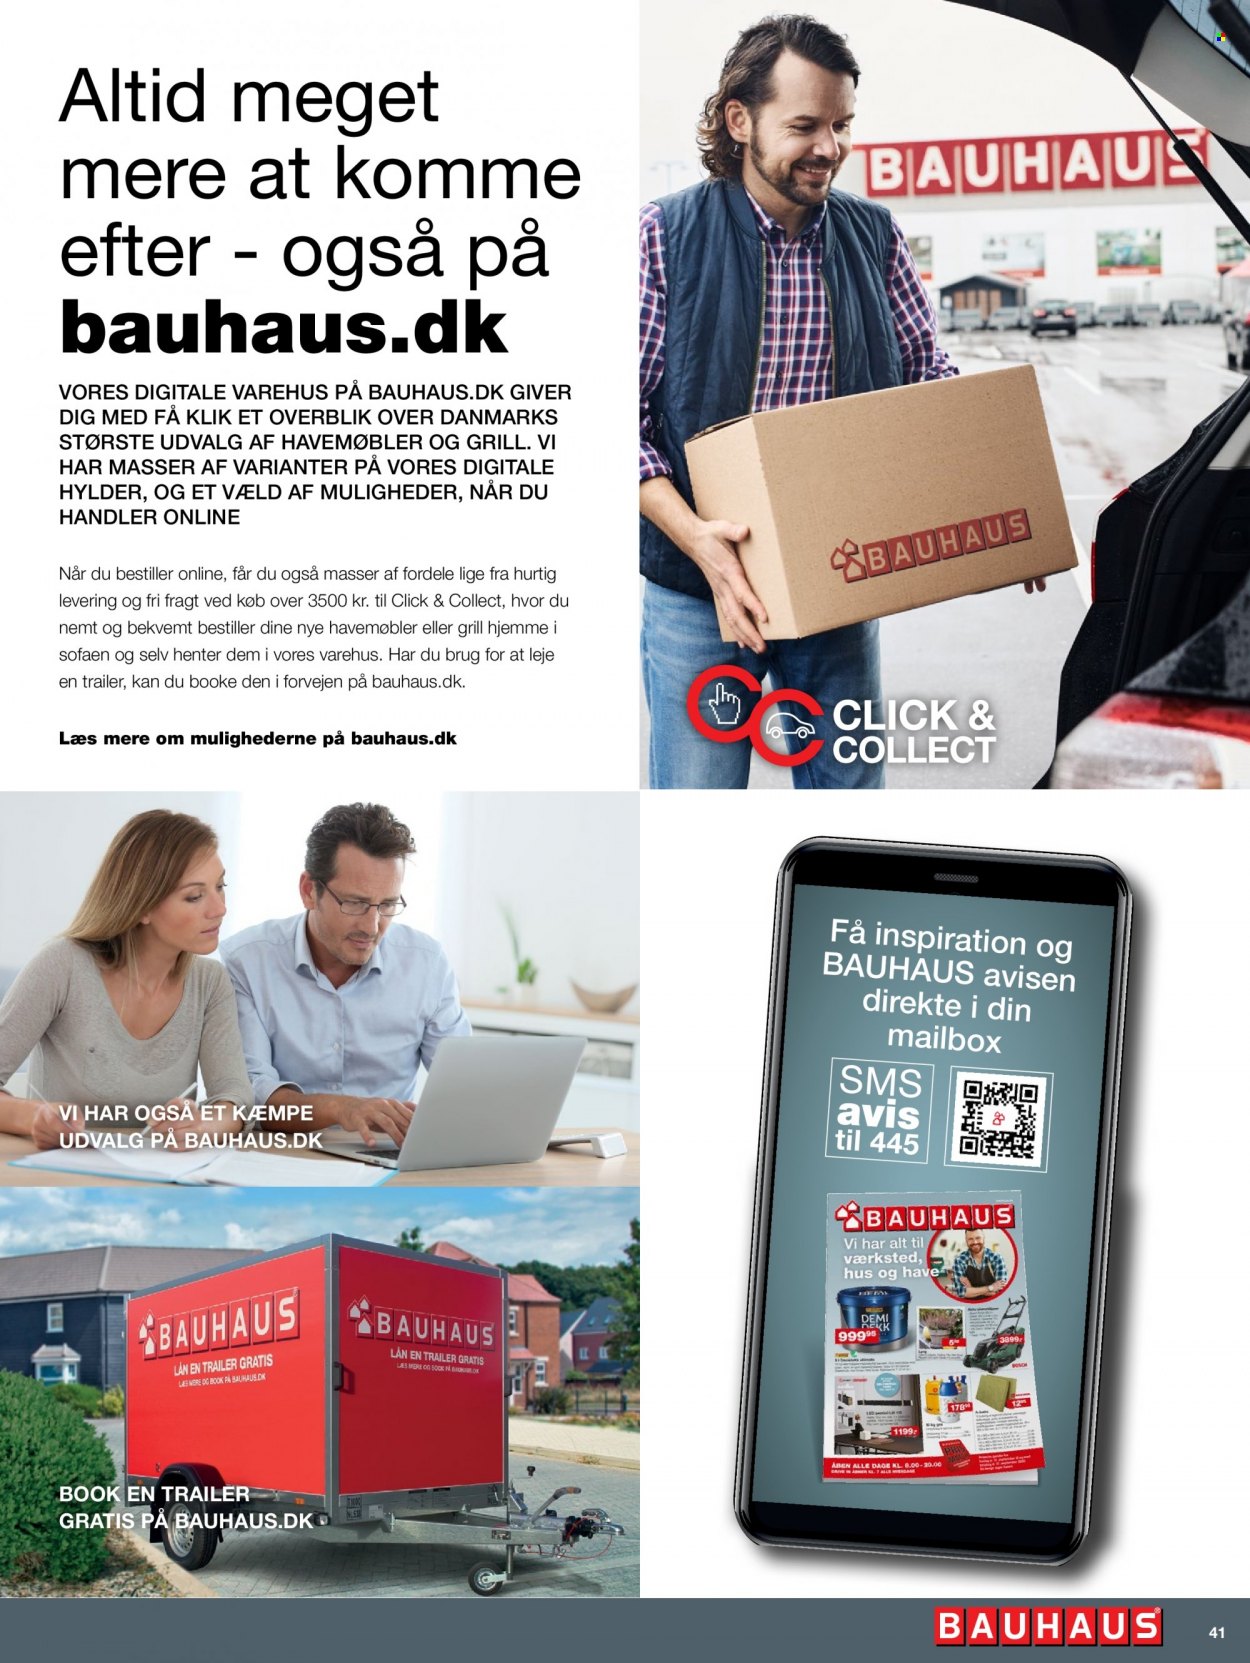 Bauhaus tilbud  - tilbudsprodukter - havemøbler. Side 41.